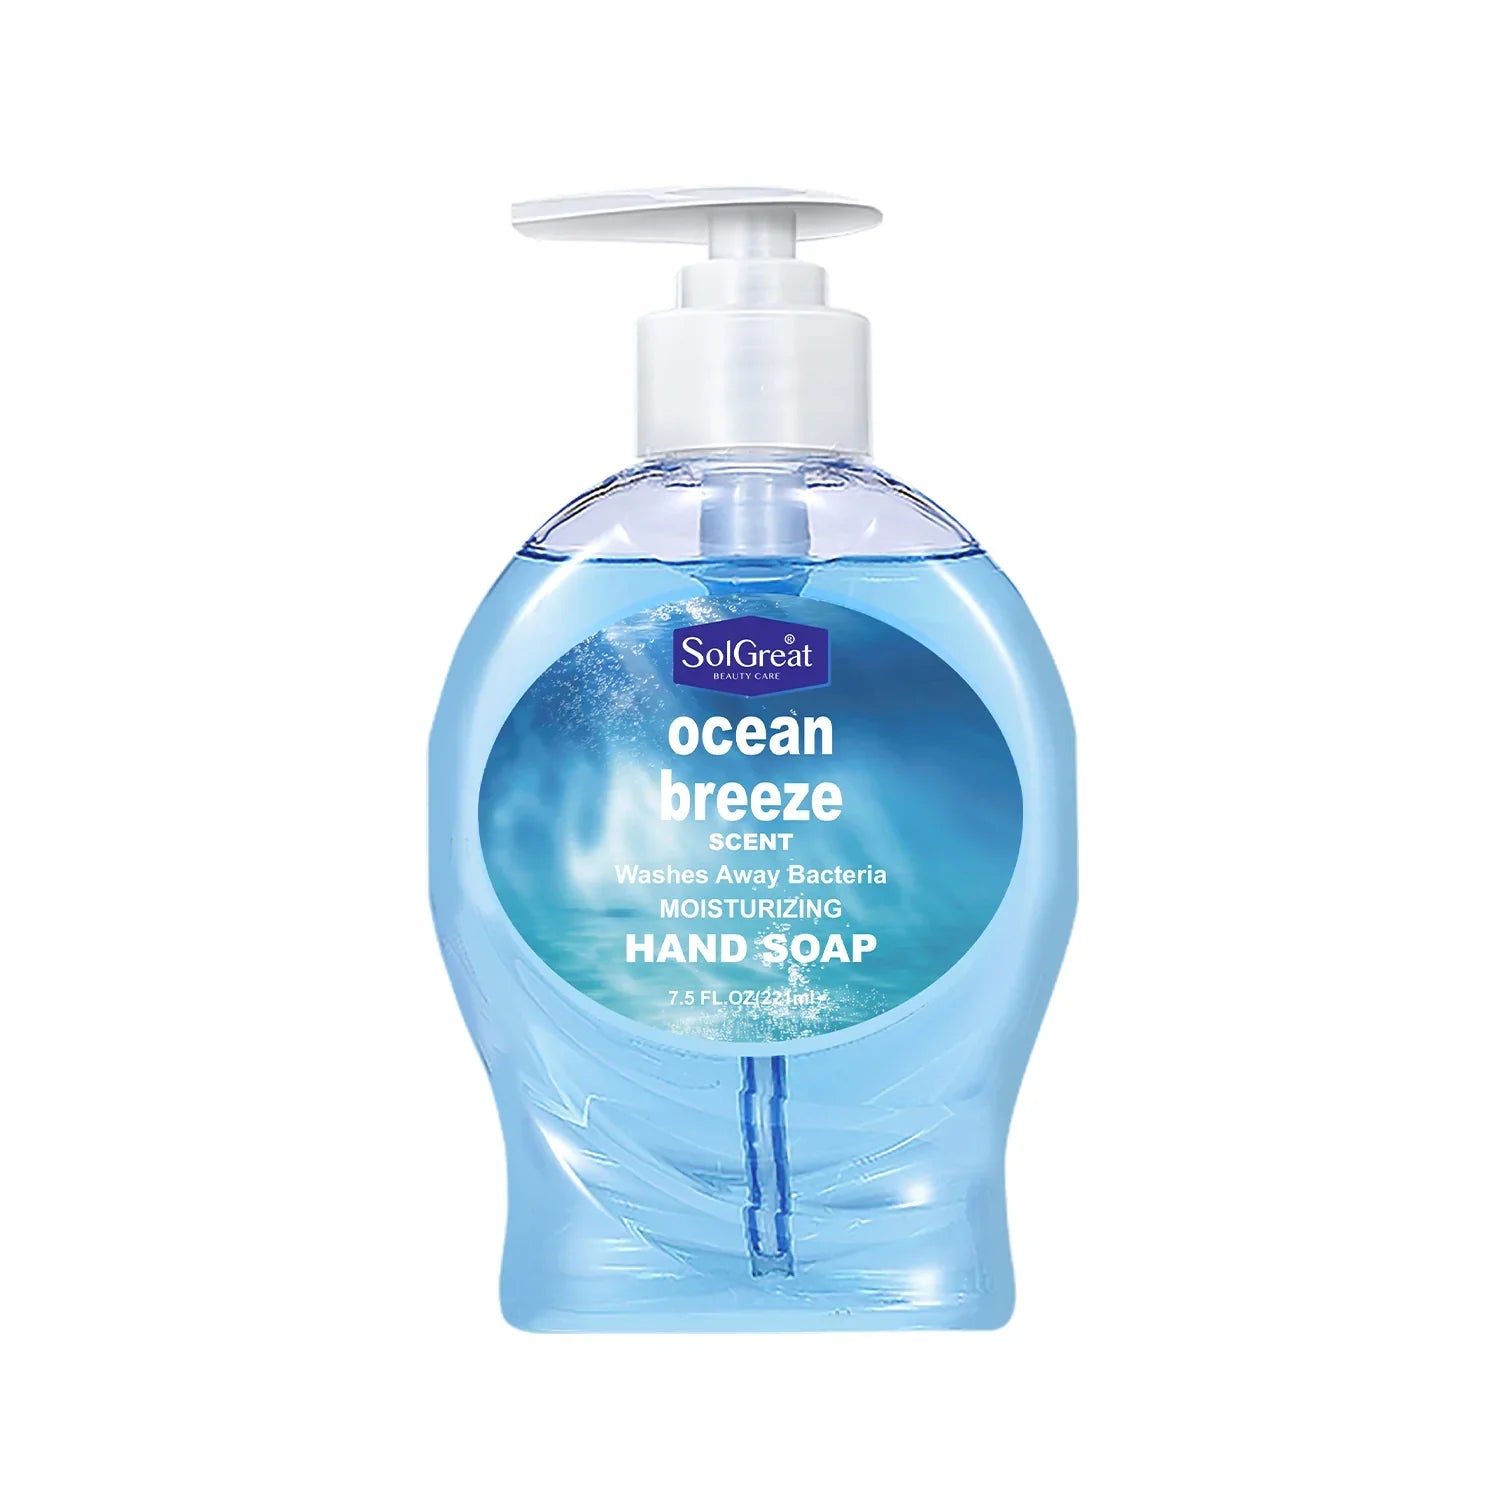 solgreat-moisturizing-hand-soap-ocean-breeze-scent